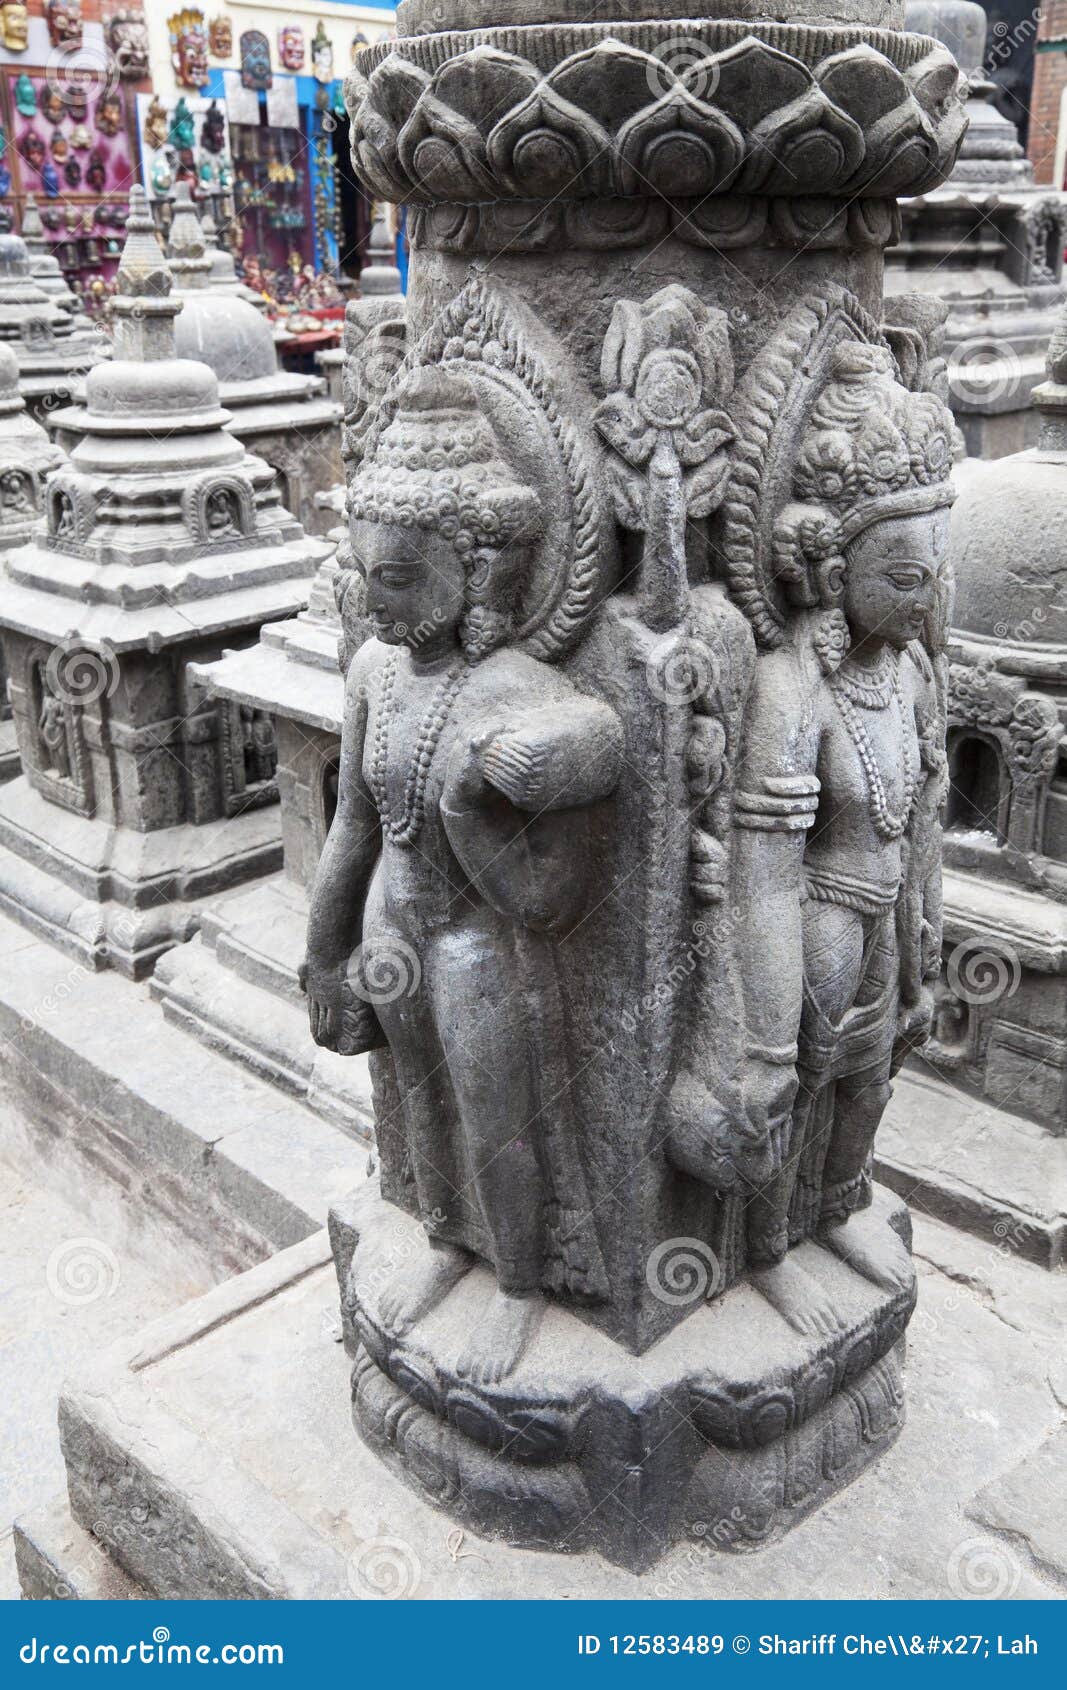 granite sculptures at swayambunath, nepal